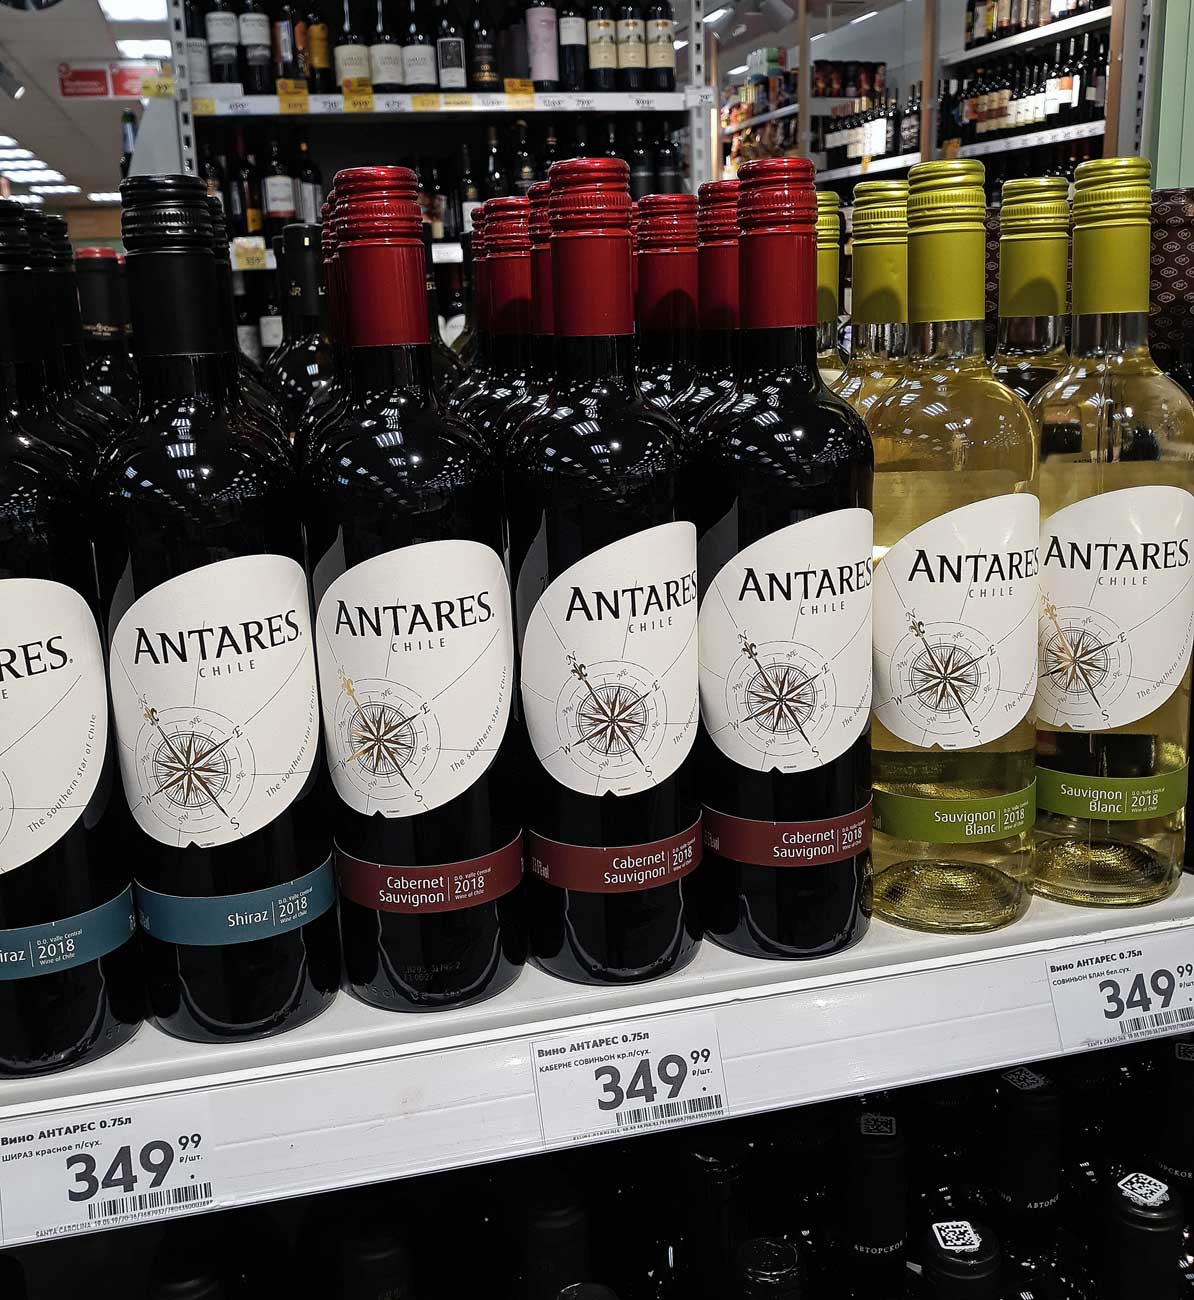 Вино в пятерке. Вино Антарес Шираз. Antares Shiraz вино Пятерочка. Antares вино белое. Шираз вино Чили.